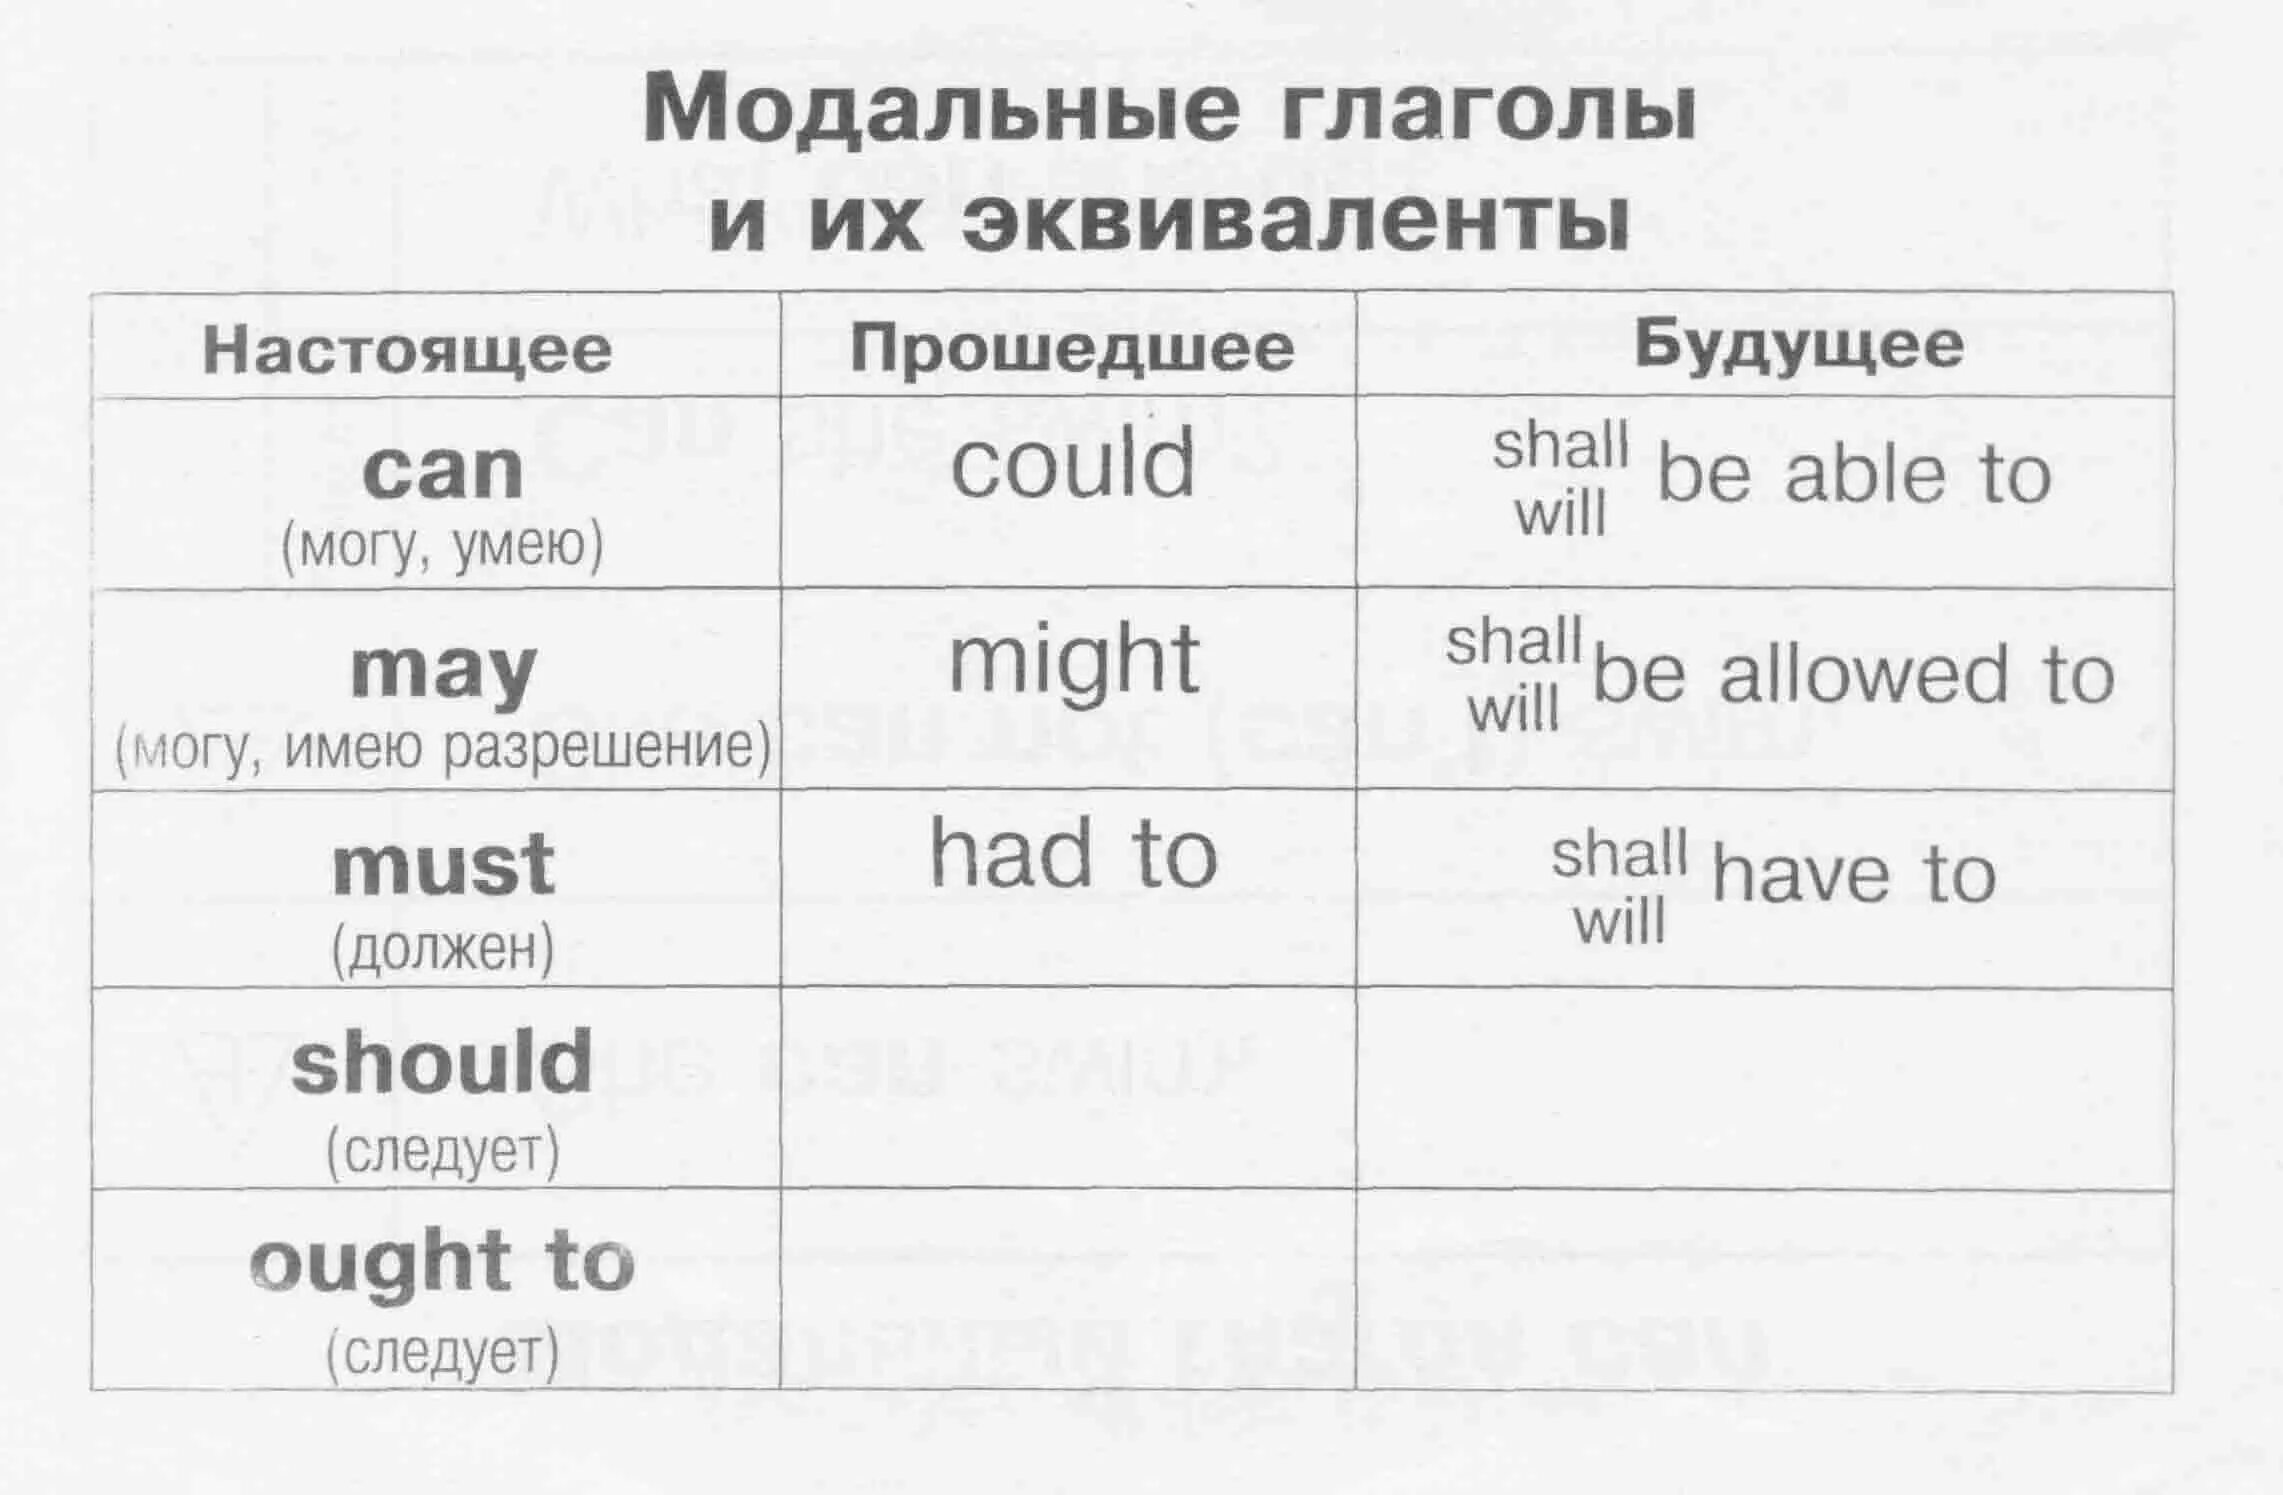 Модальные глаголы англ яз таблица. Модальные глаголы в английском таблица. Модальные глаголы и их эквиваленты в английском языке. Модальные глаголы в английском языке таблица.